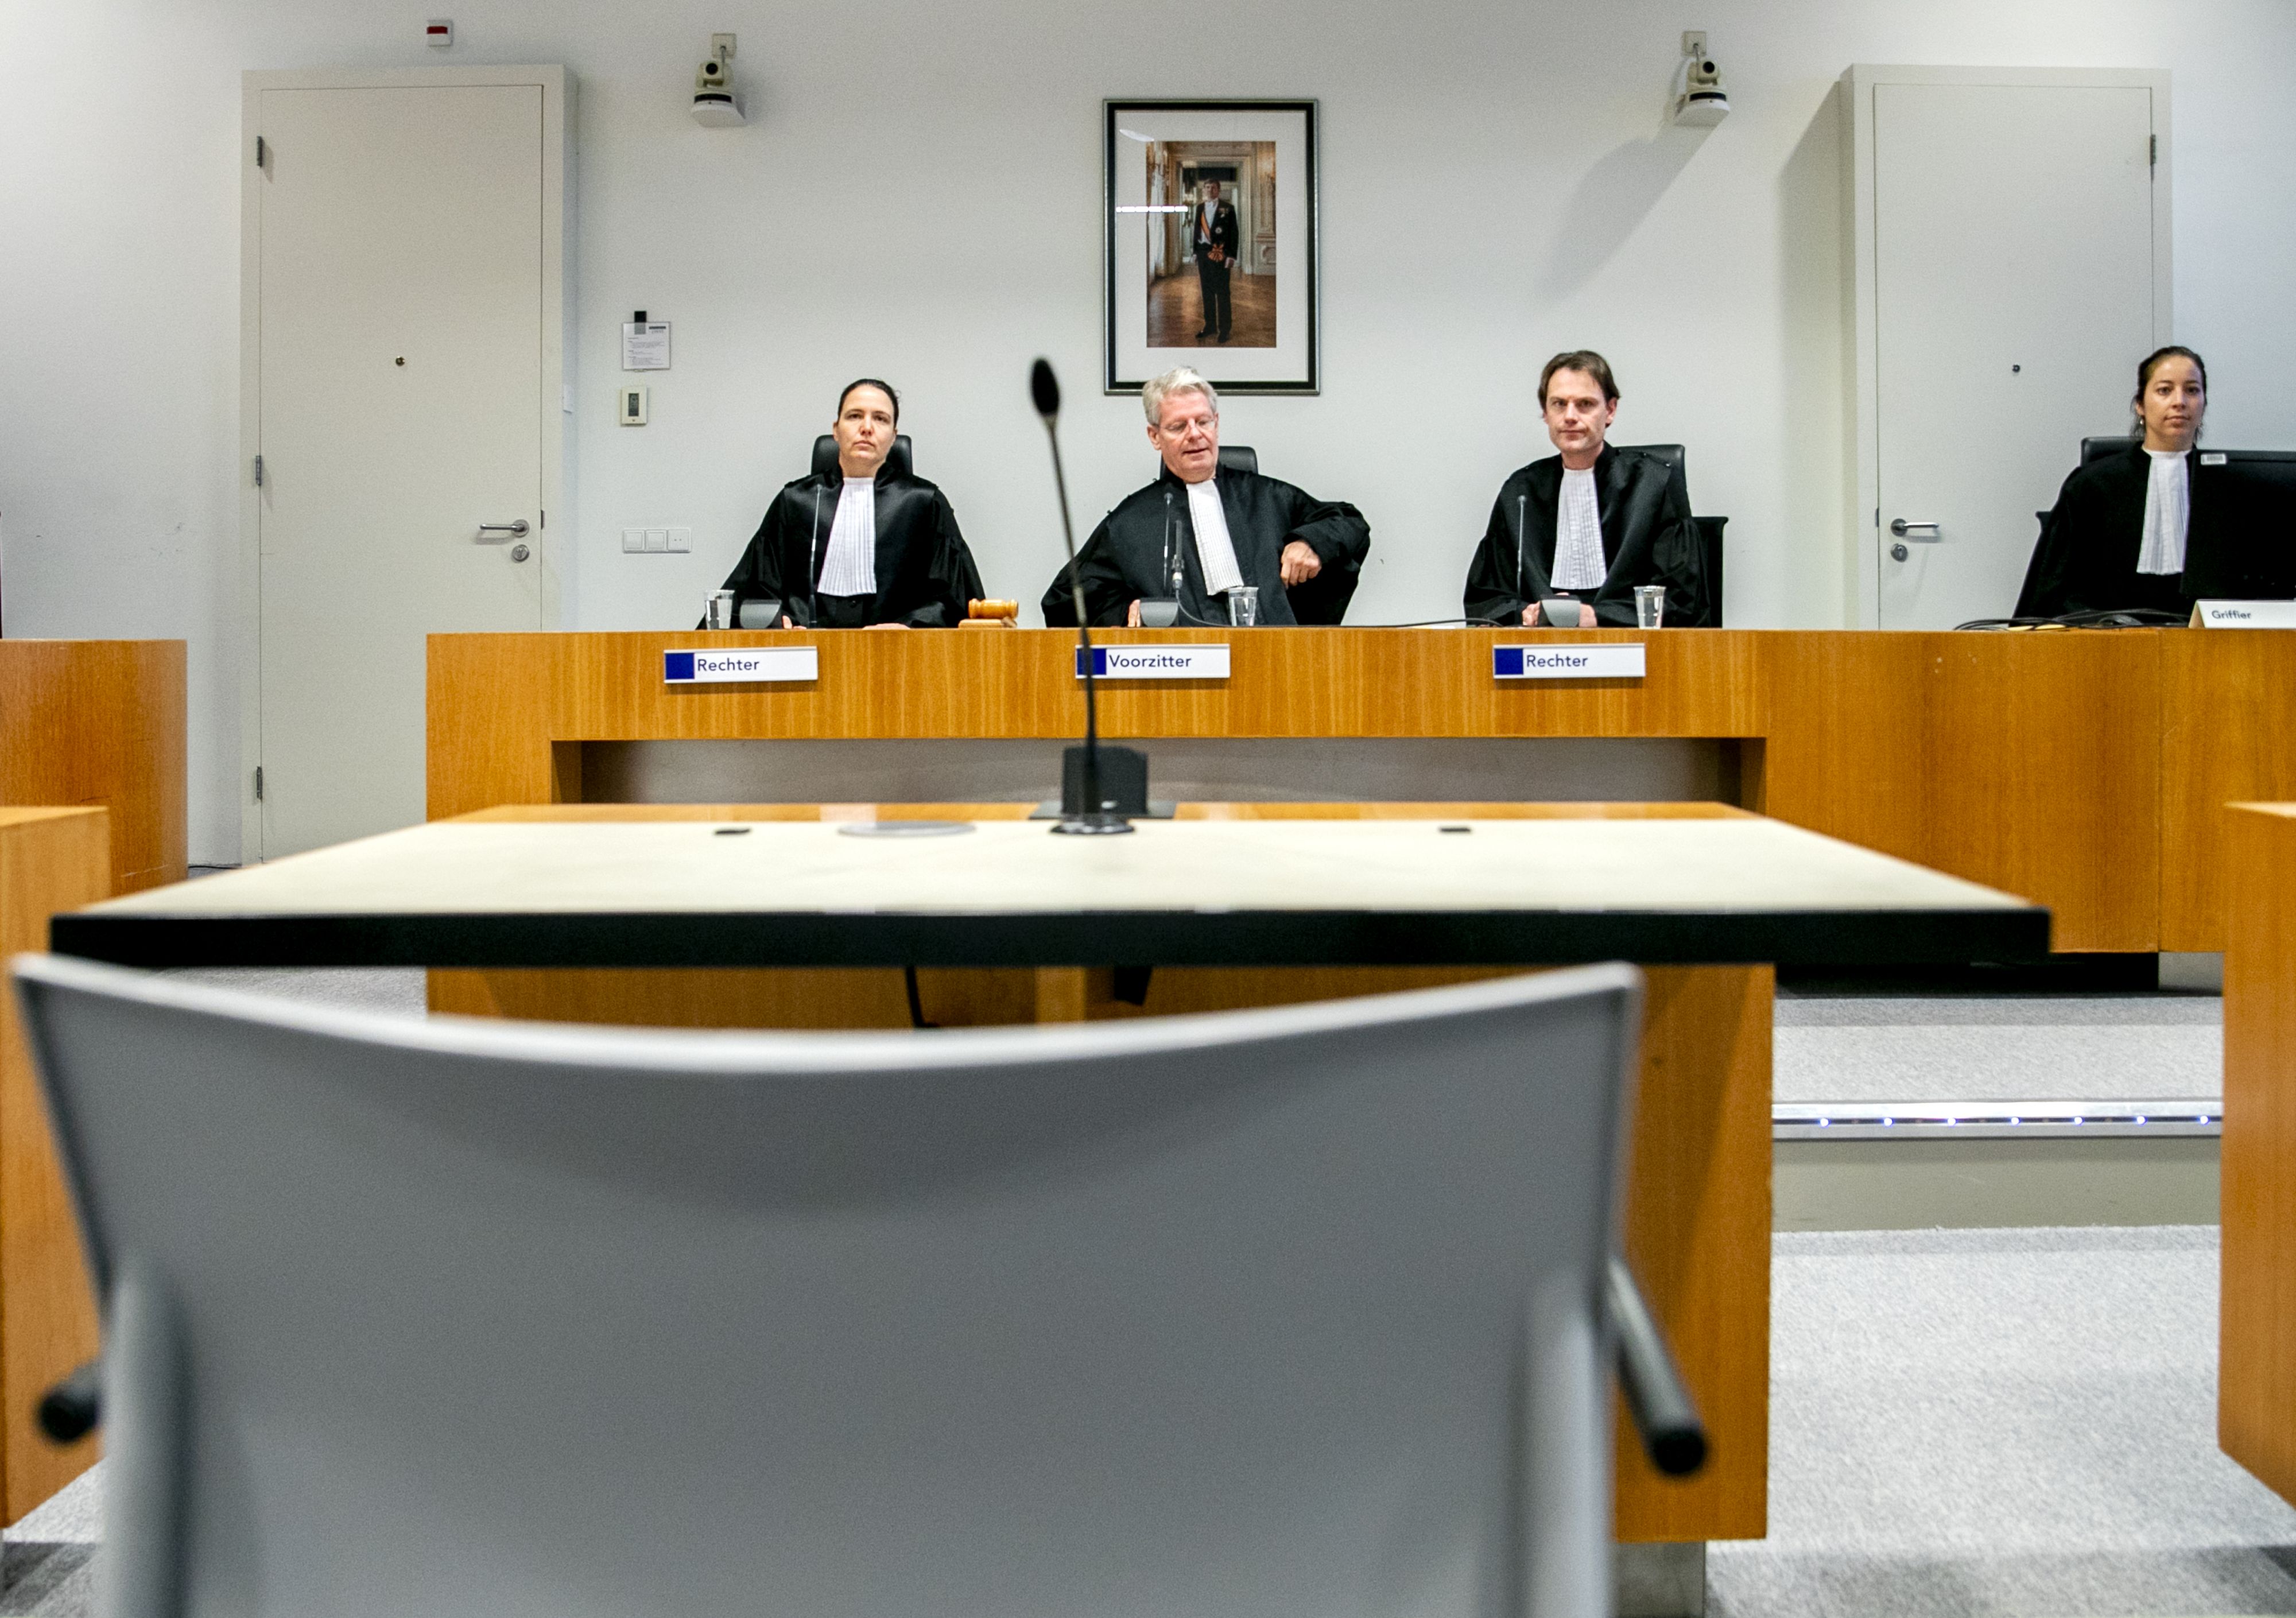 Rechter C.M.A.T. van der Geest, voorzitter R. Veldhuisen, rechter J. G. van Ommeren en griffier M. J. den Haan voorafgaand aan een regiezitting in de rechtszaak omtrent de 'tramschutter' Gokmen T. 